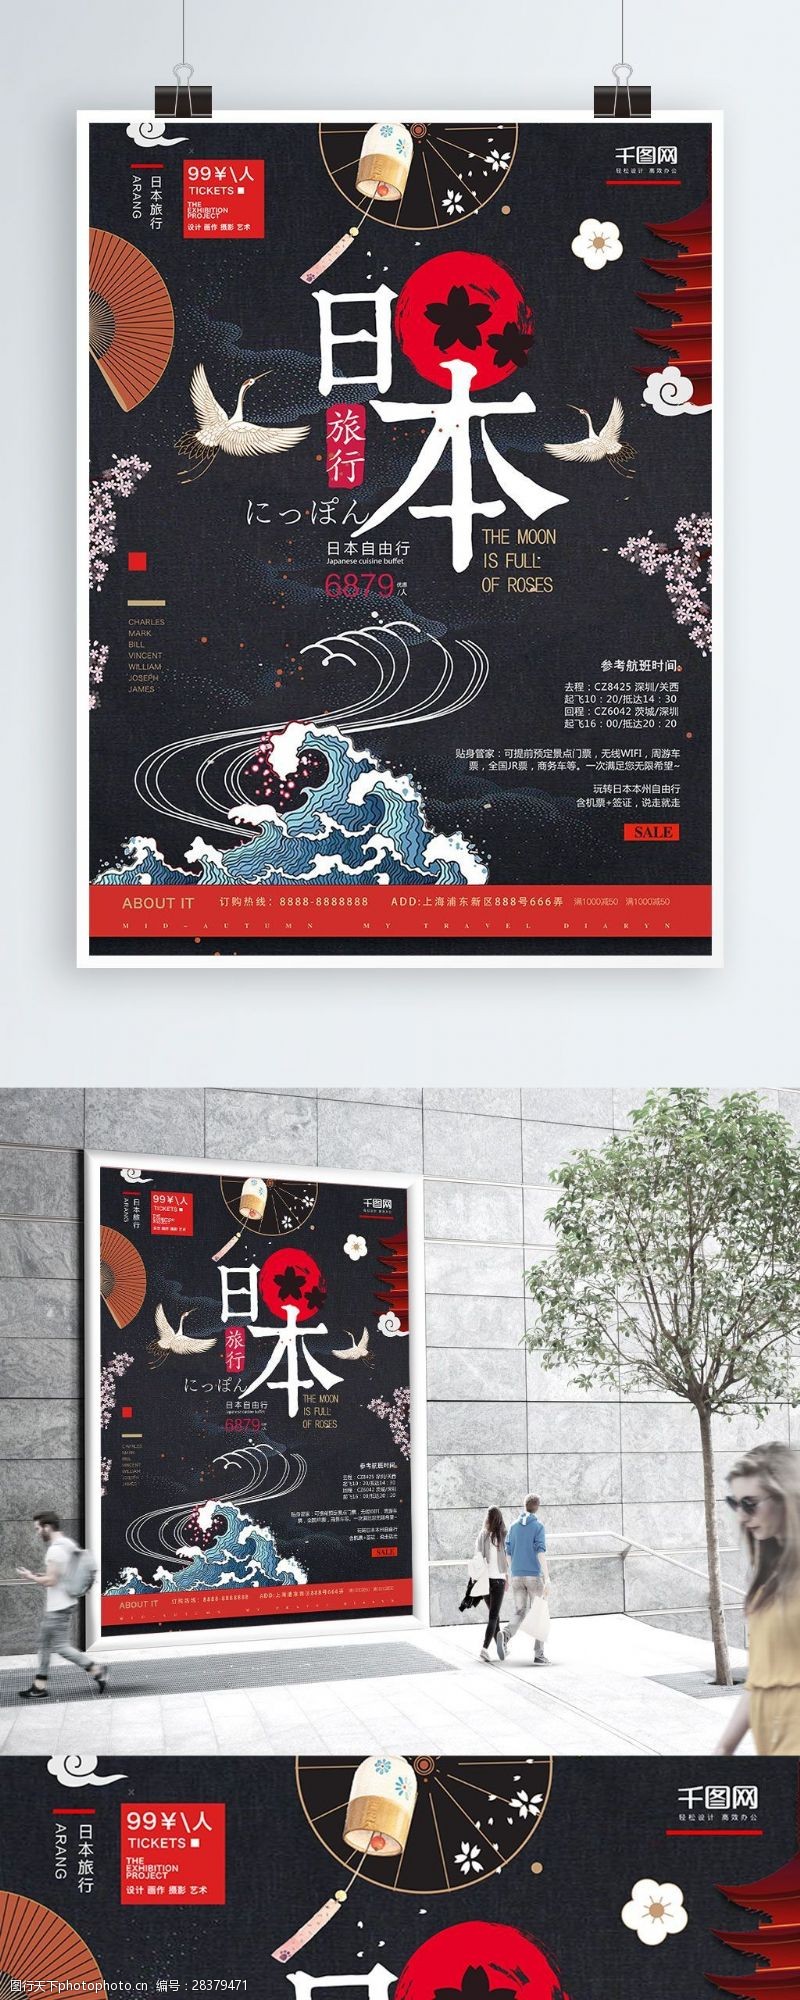 樱花旅游樱花灯笼黑色日式风日本自由行旅游宣传海报